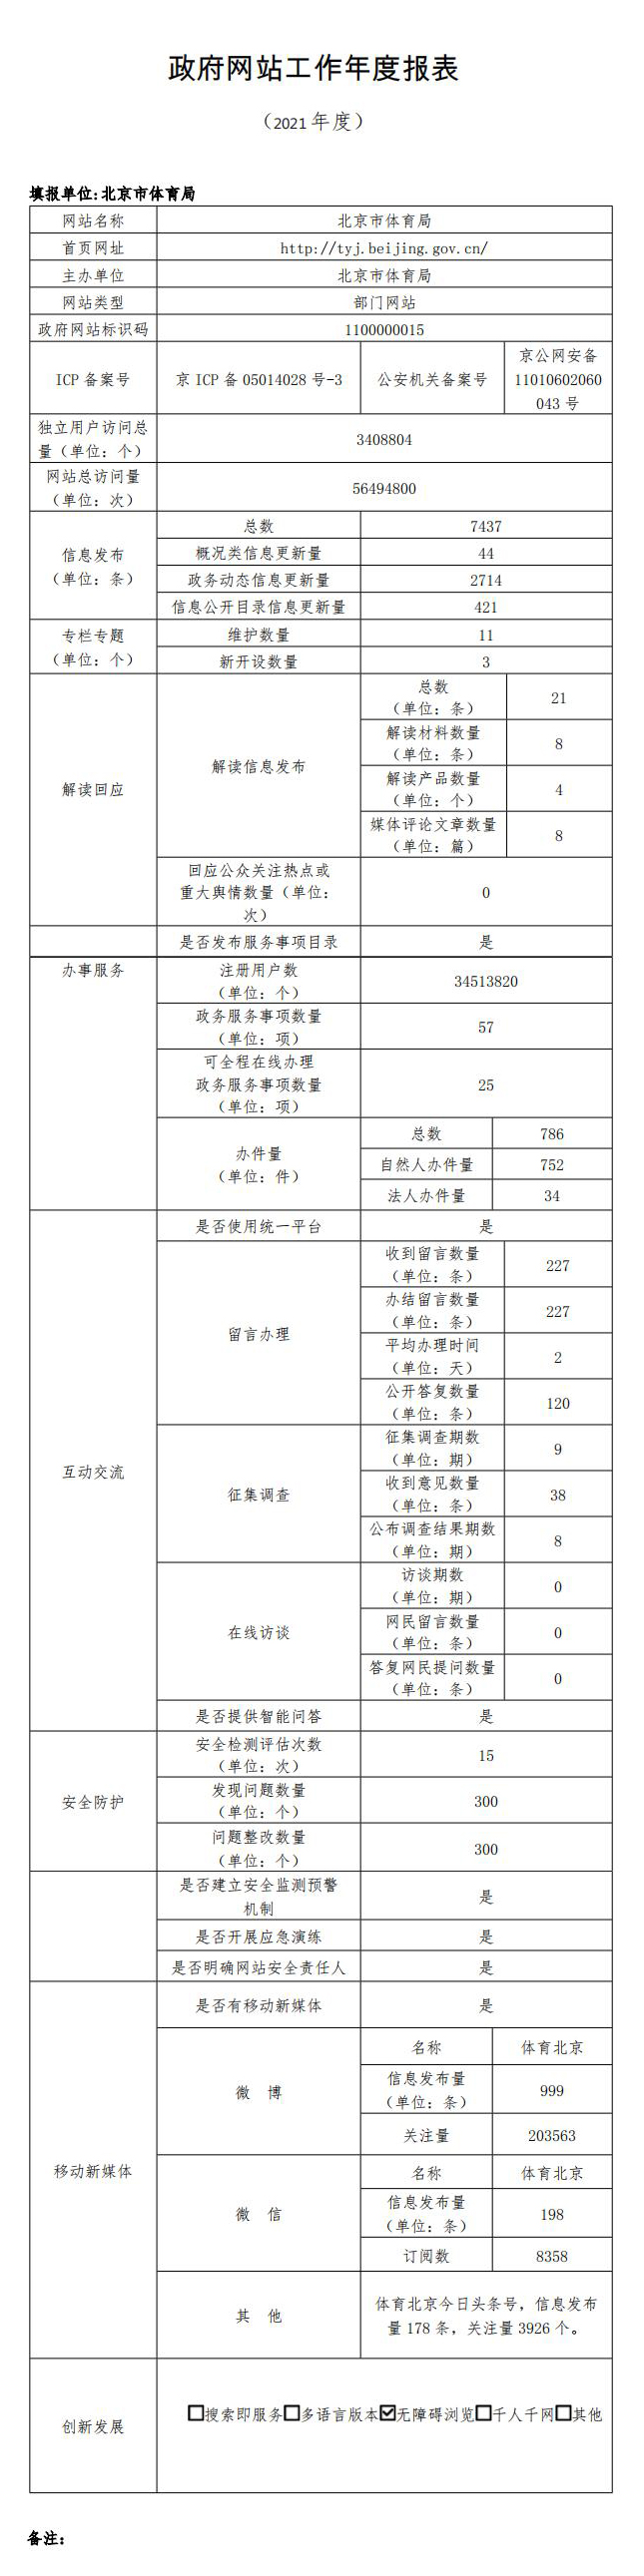 北京市体育局2021年政府网站年度工作报表